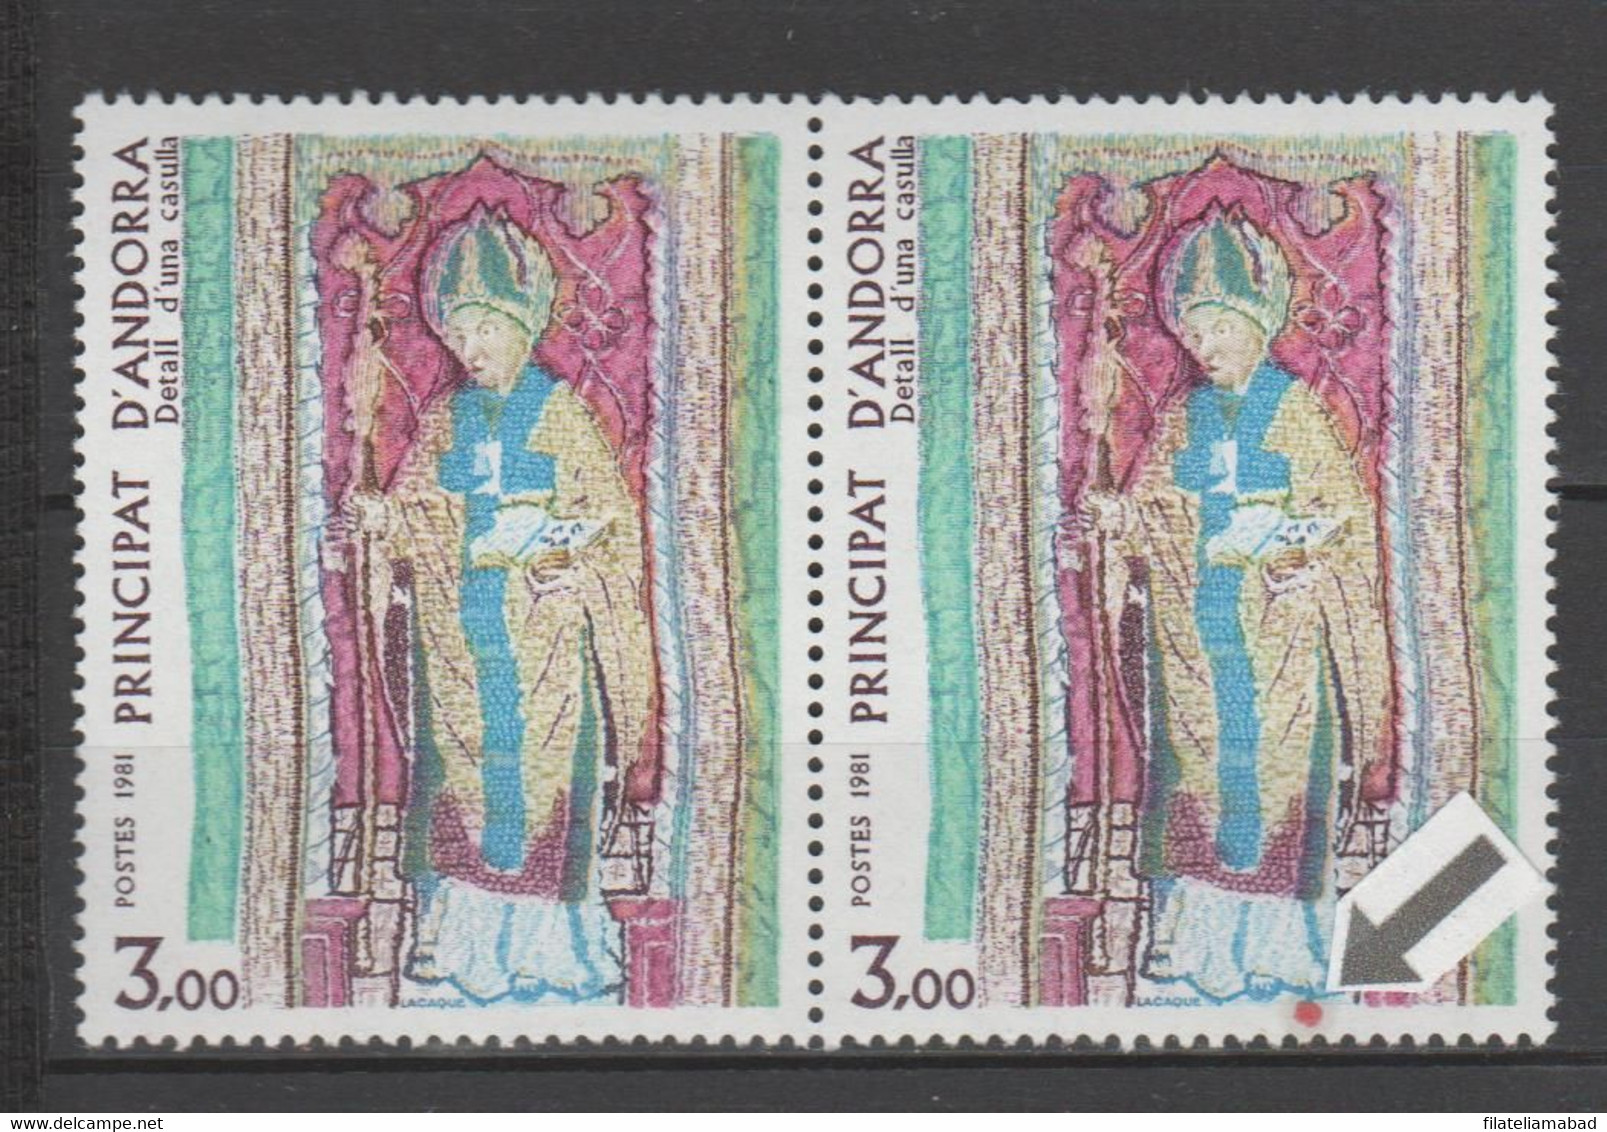 ANDORRA C. FRANCÉS  UNO DE LOS SELLOS CON UNA MANCHITA ROJA PUEDE SER PIEZA ÚNICA (S.8) - Used Stamps